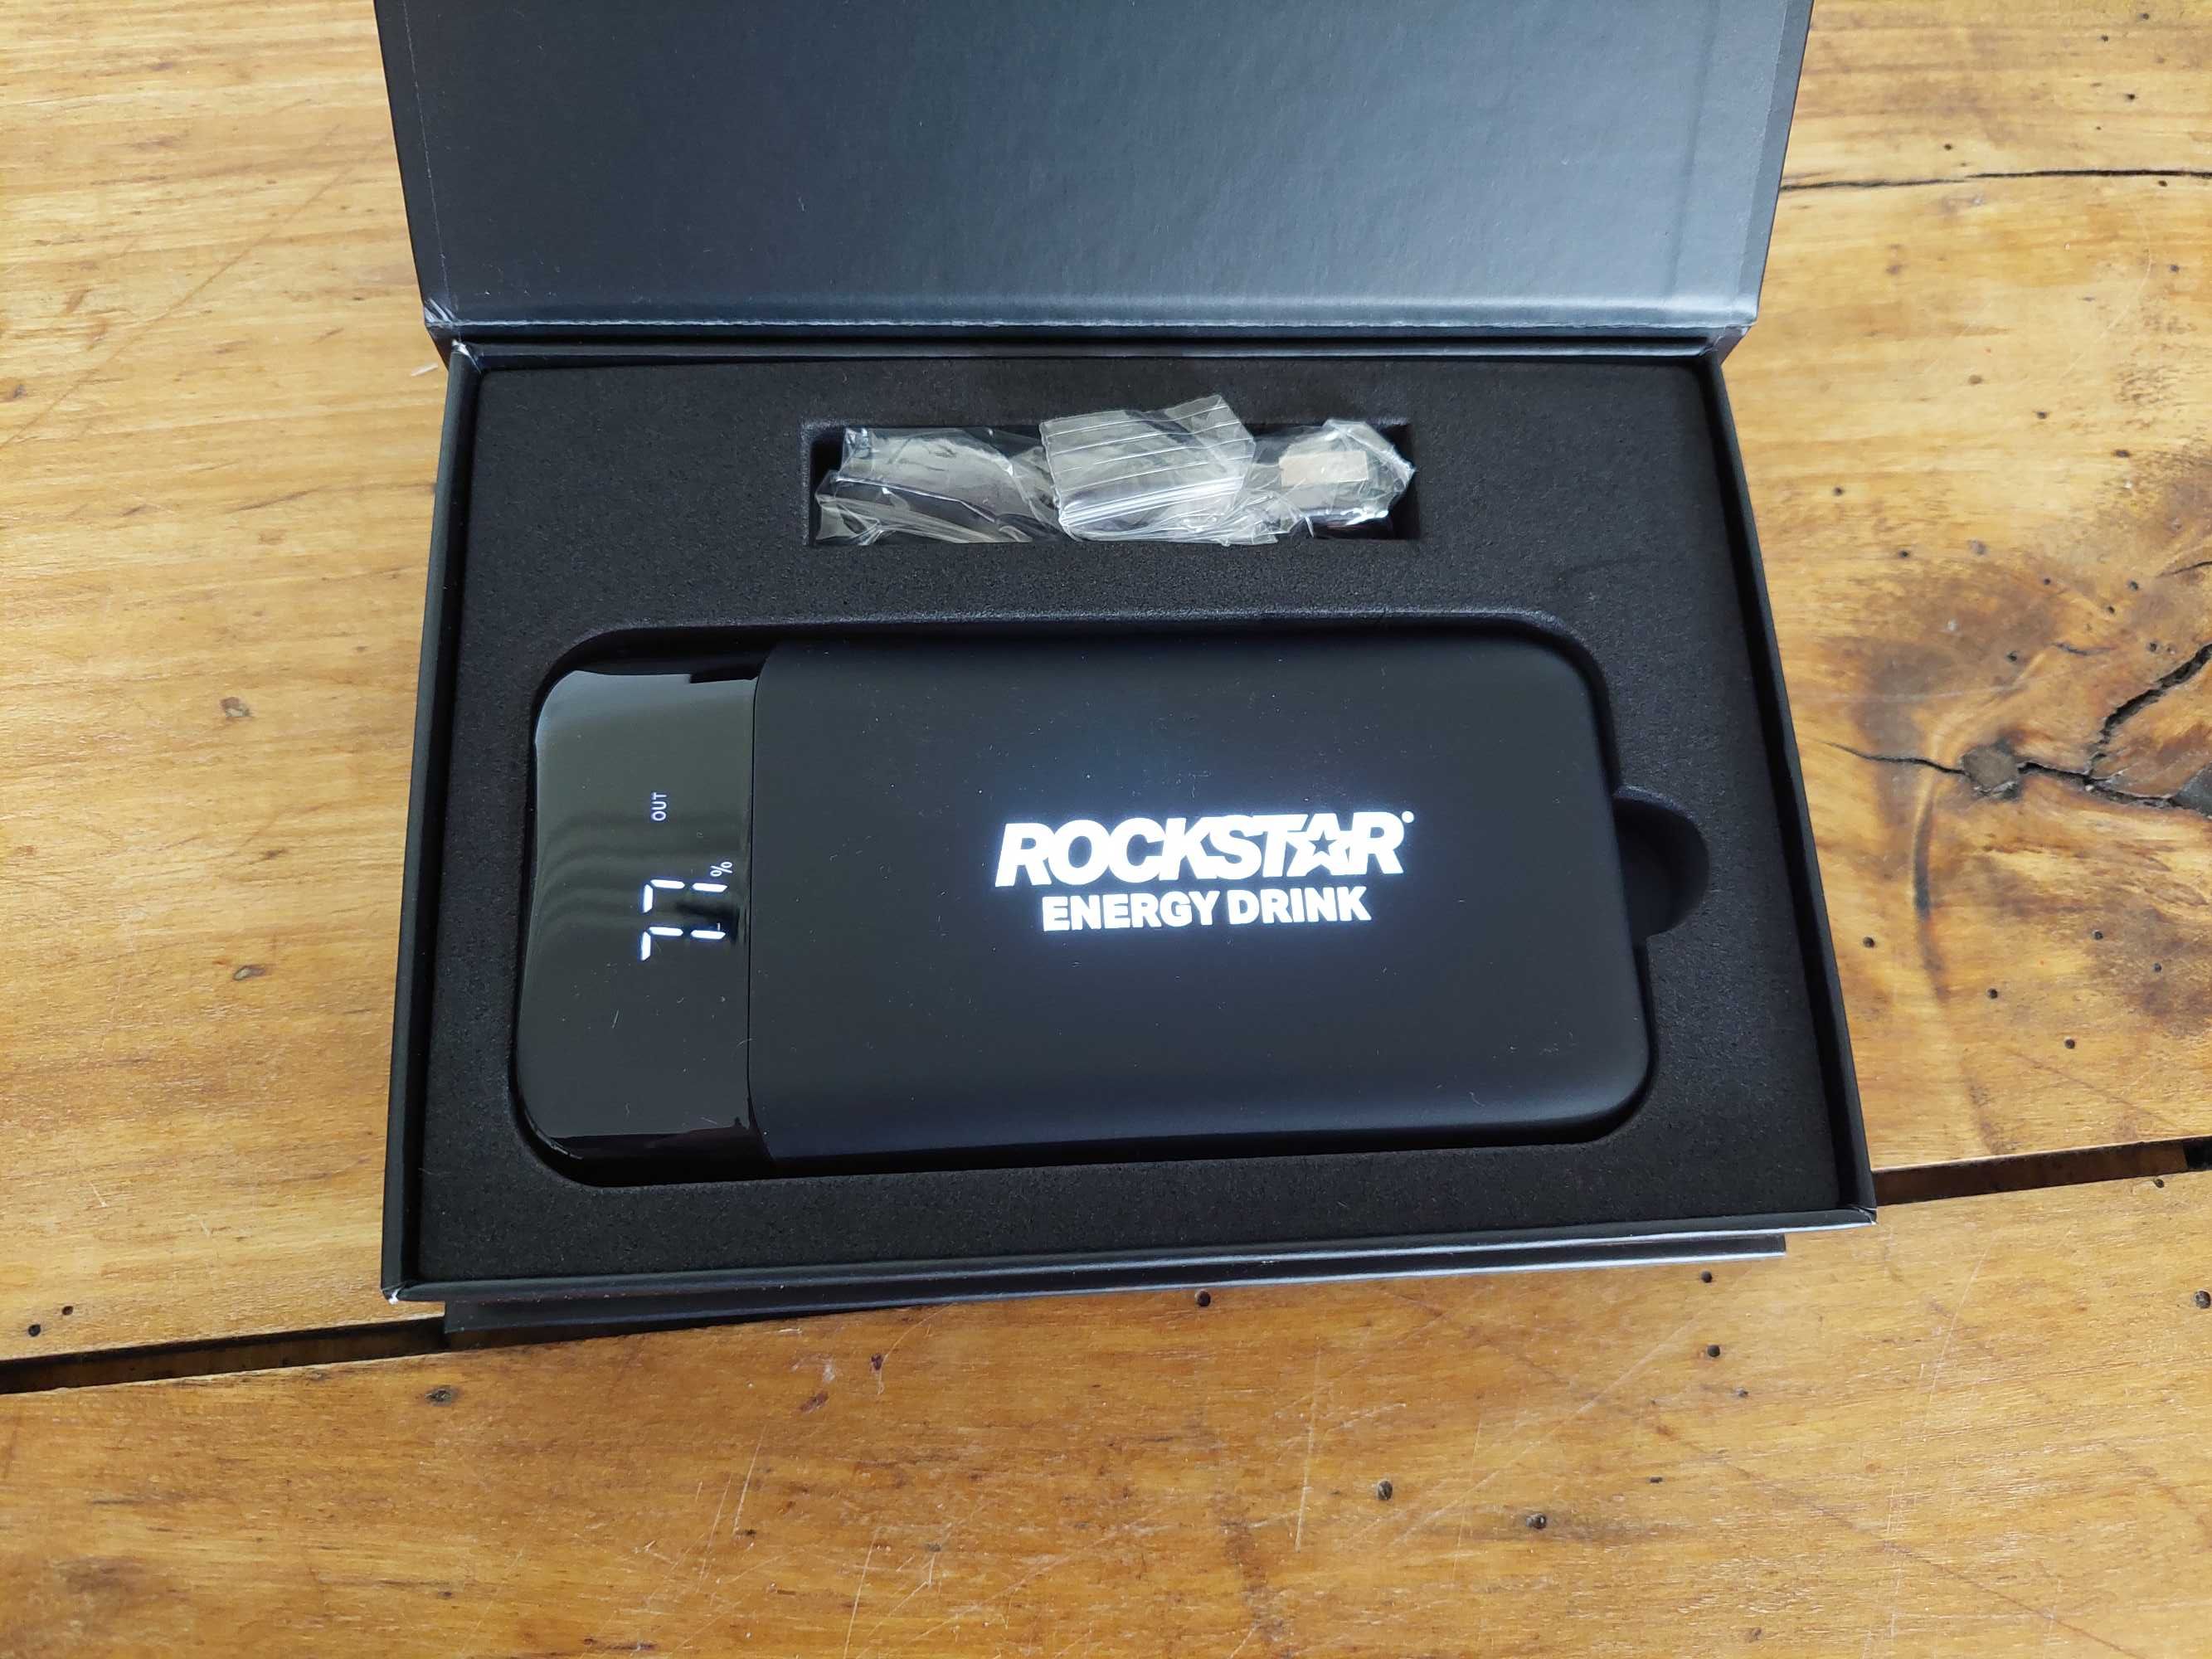 Rockstar powerbank model v3988-03